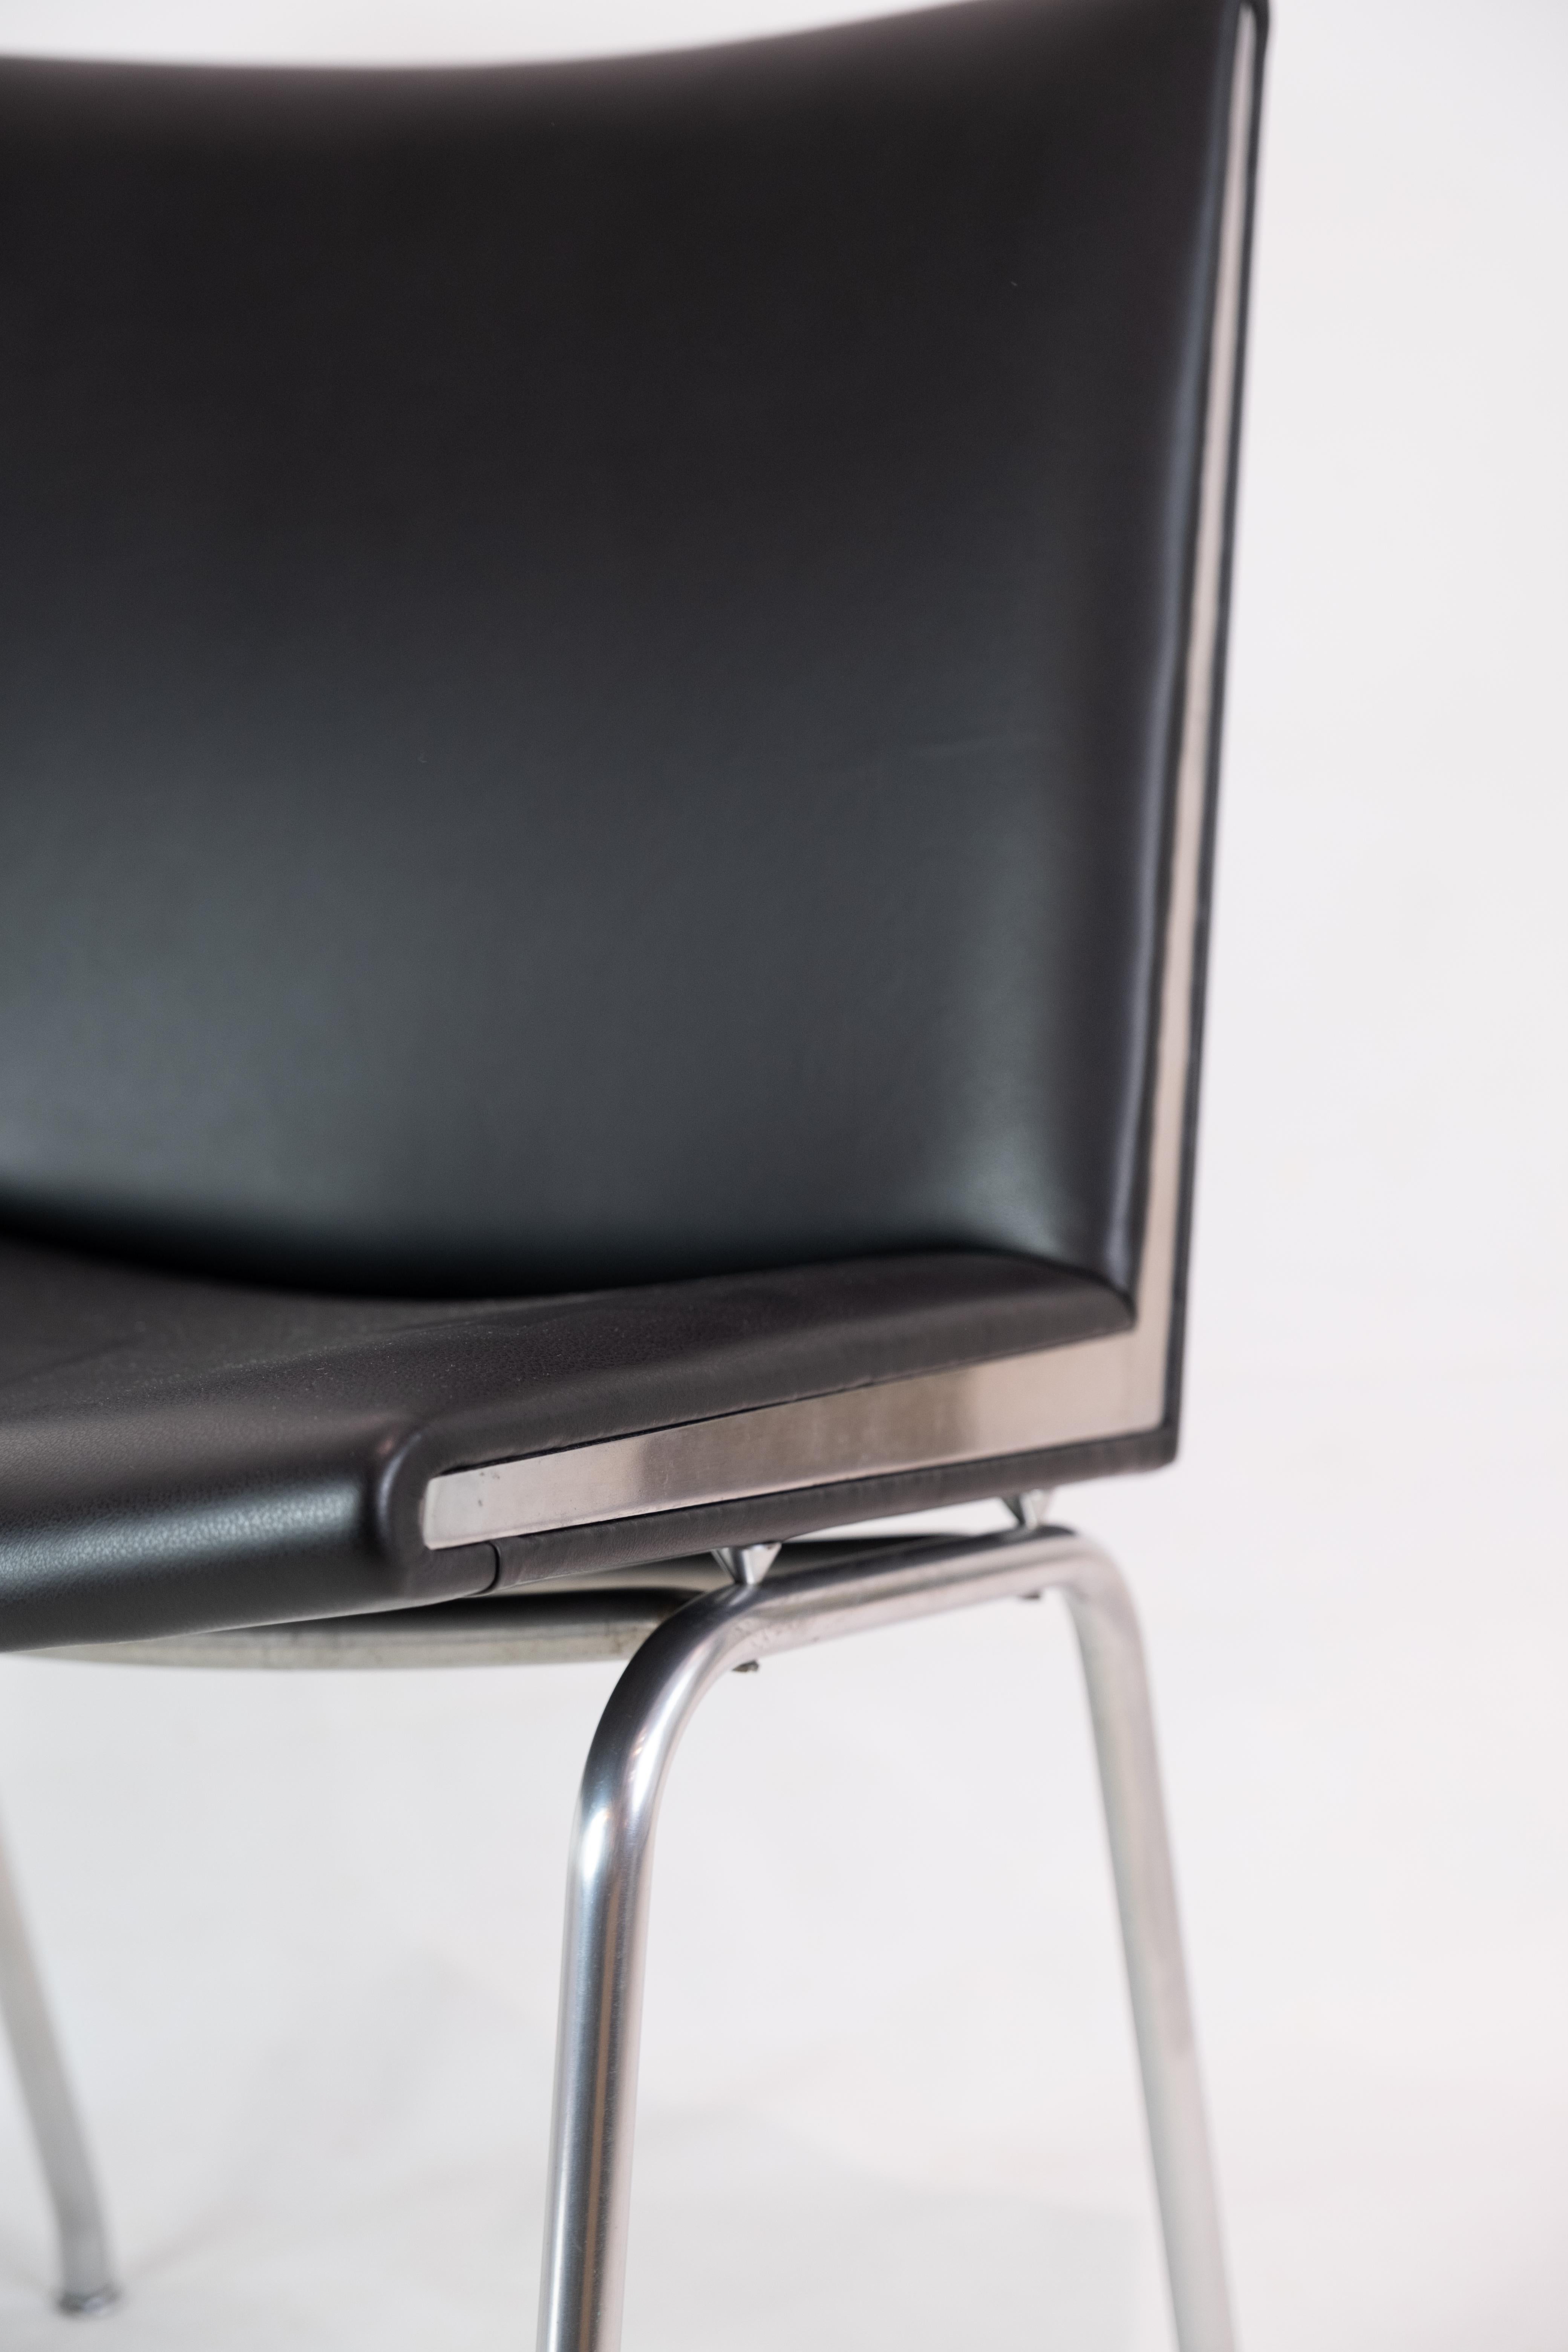 Kastrup Chair in Black Leather Model CH401 By Hans J. Wegner & Carl Hansen & Søn For Sale 3